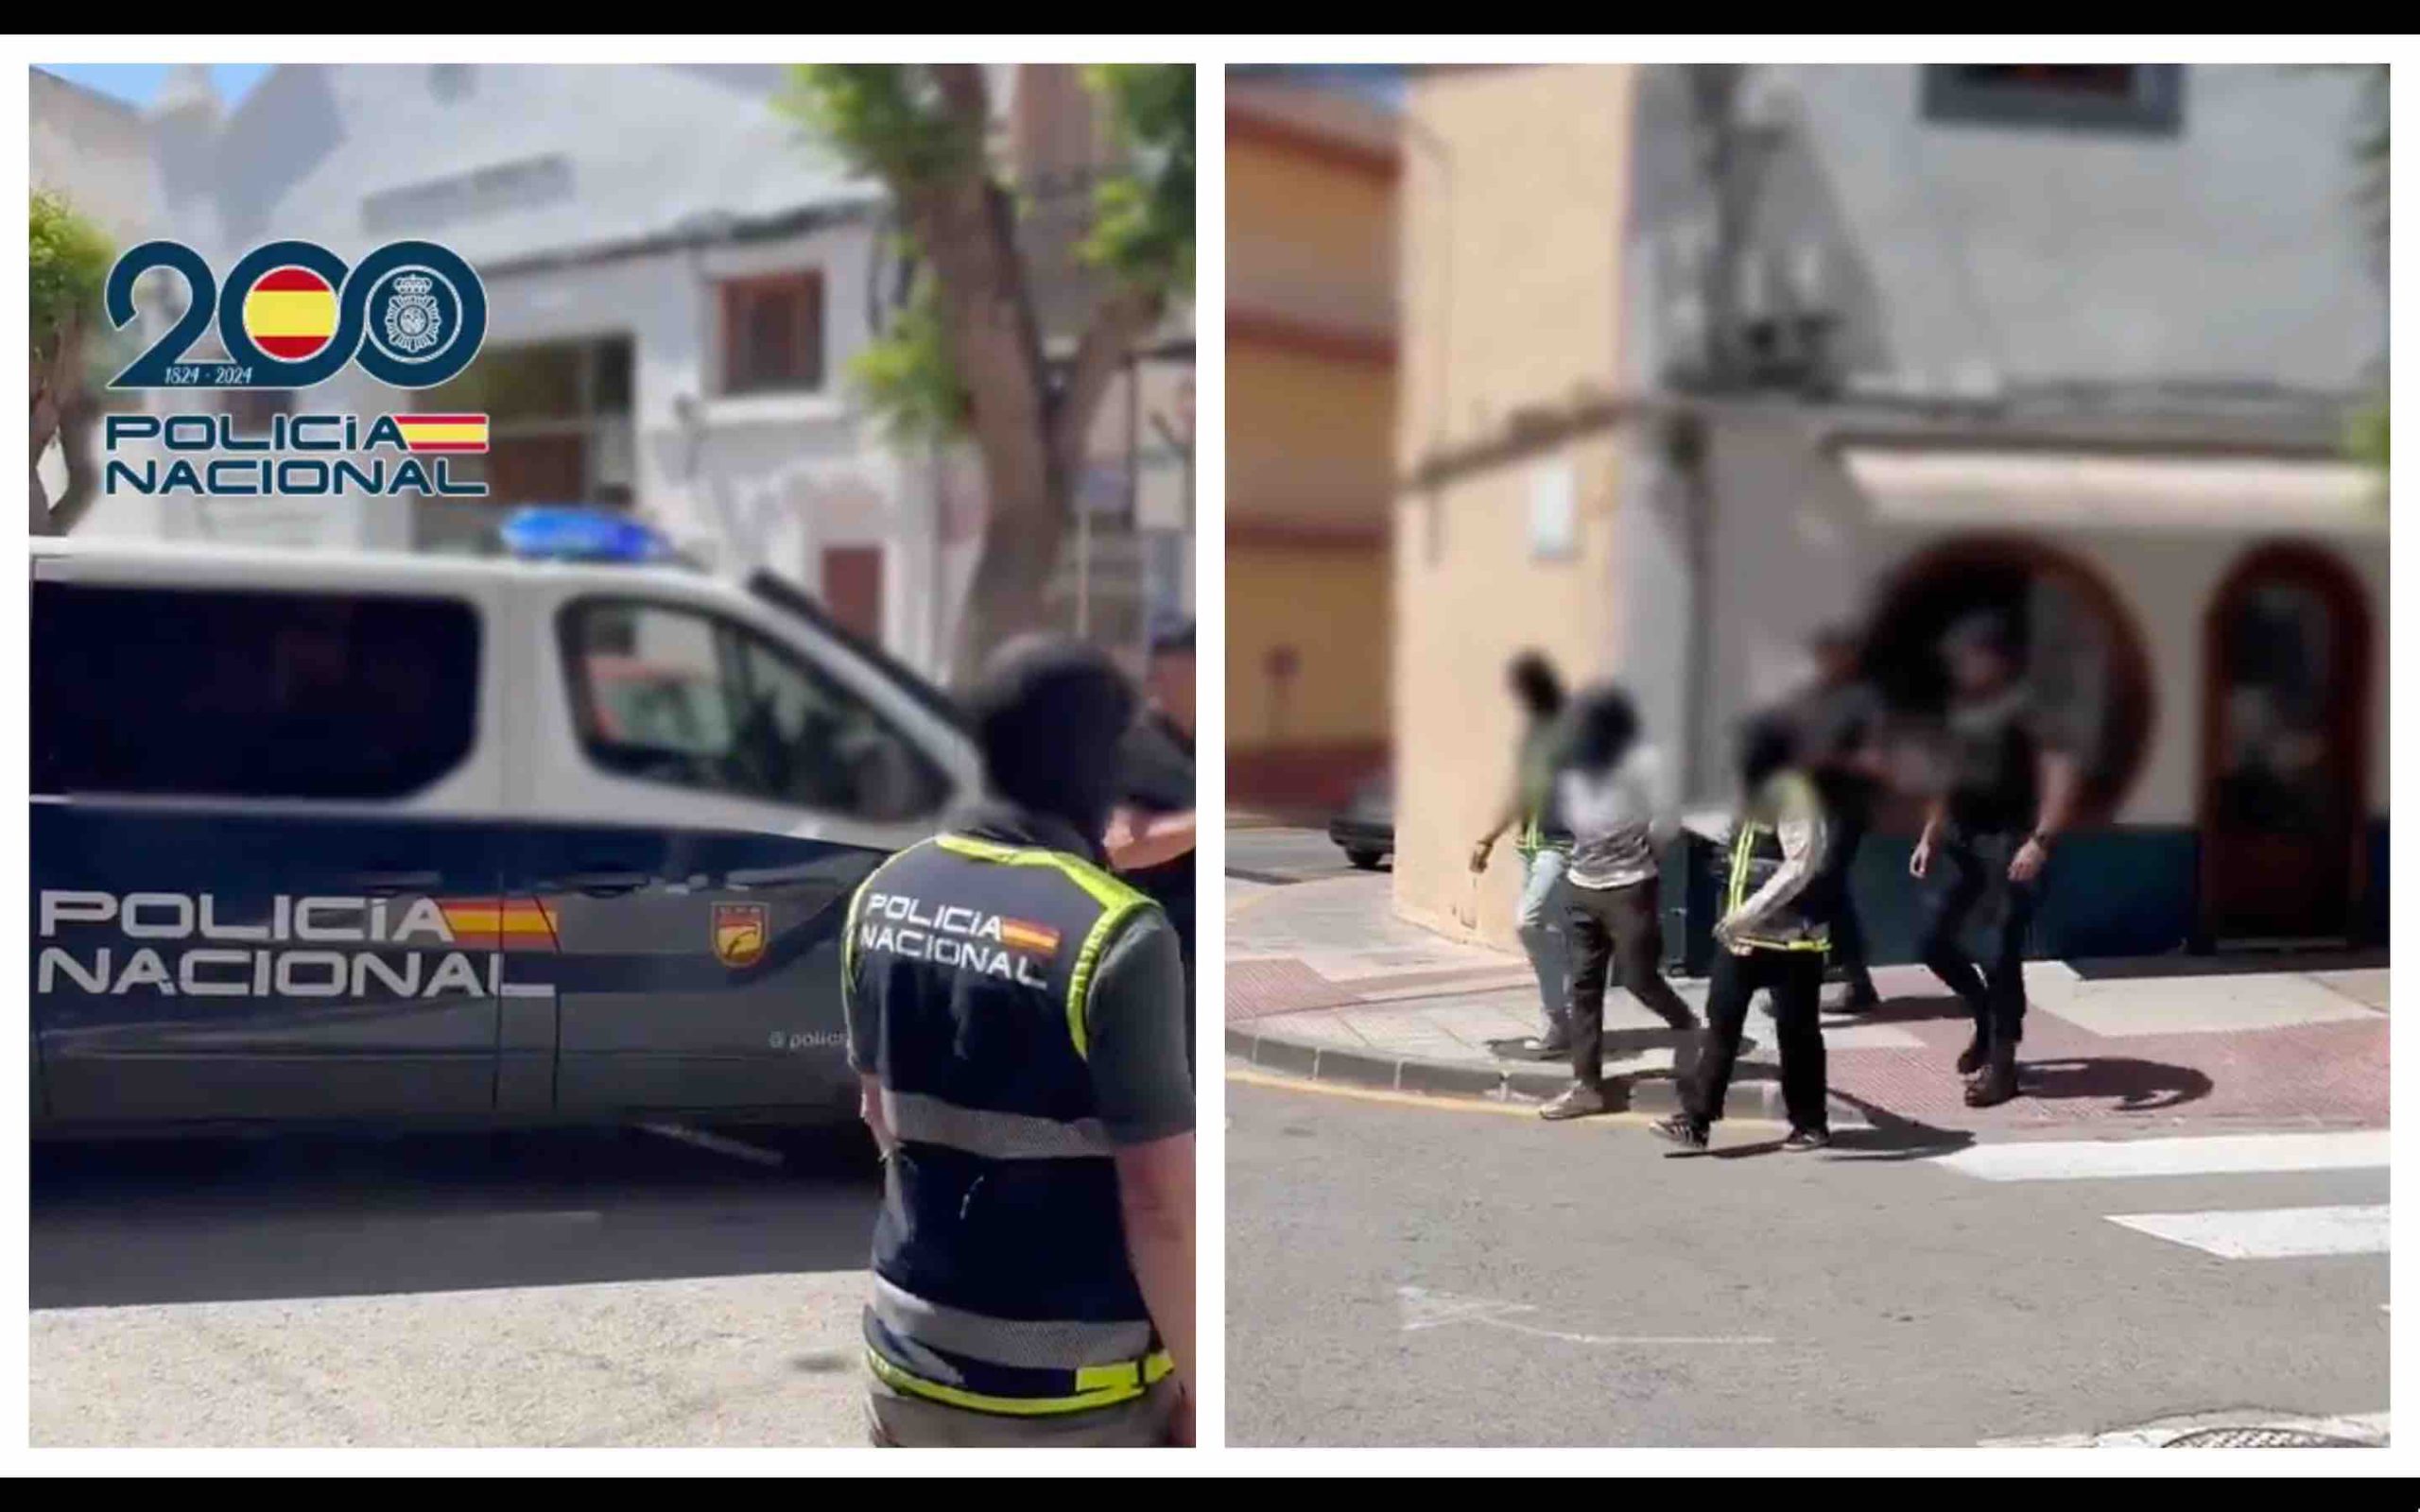 antiterrorisme Espagne arrestation partisan de Daech DGST Maroc